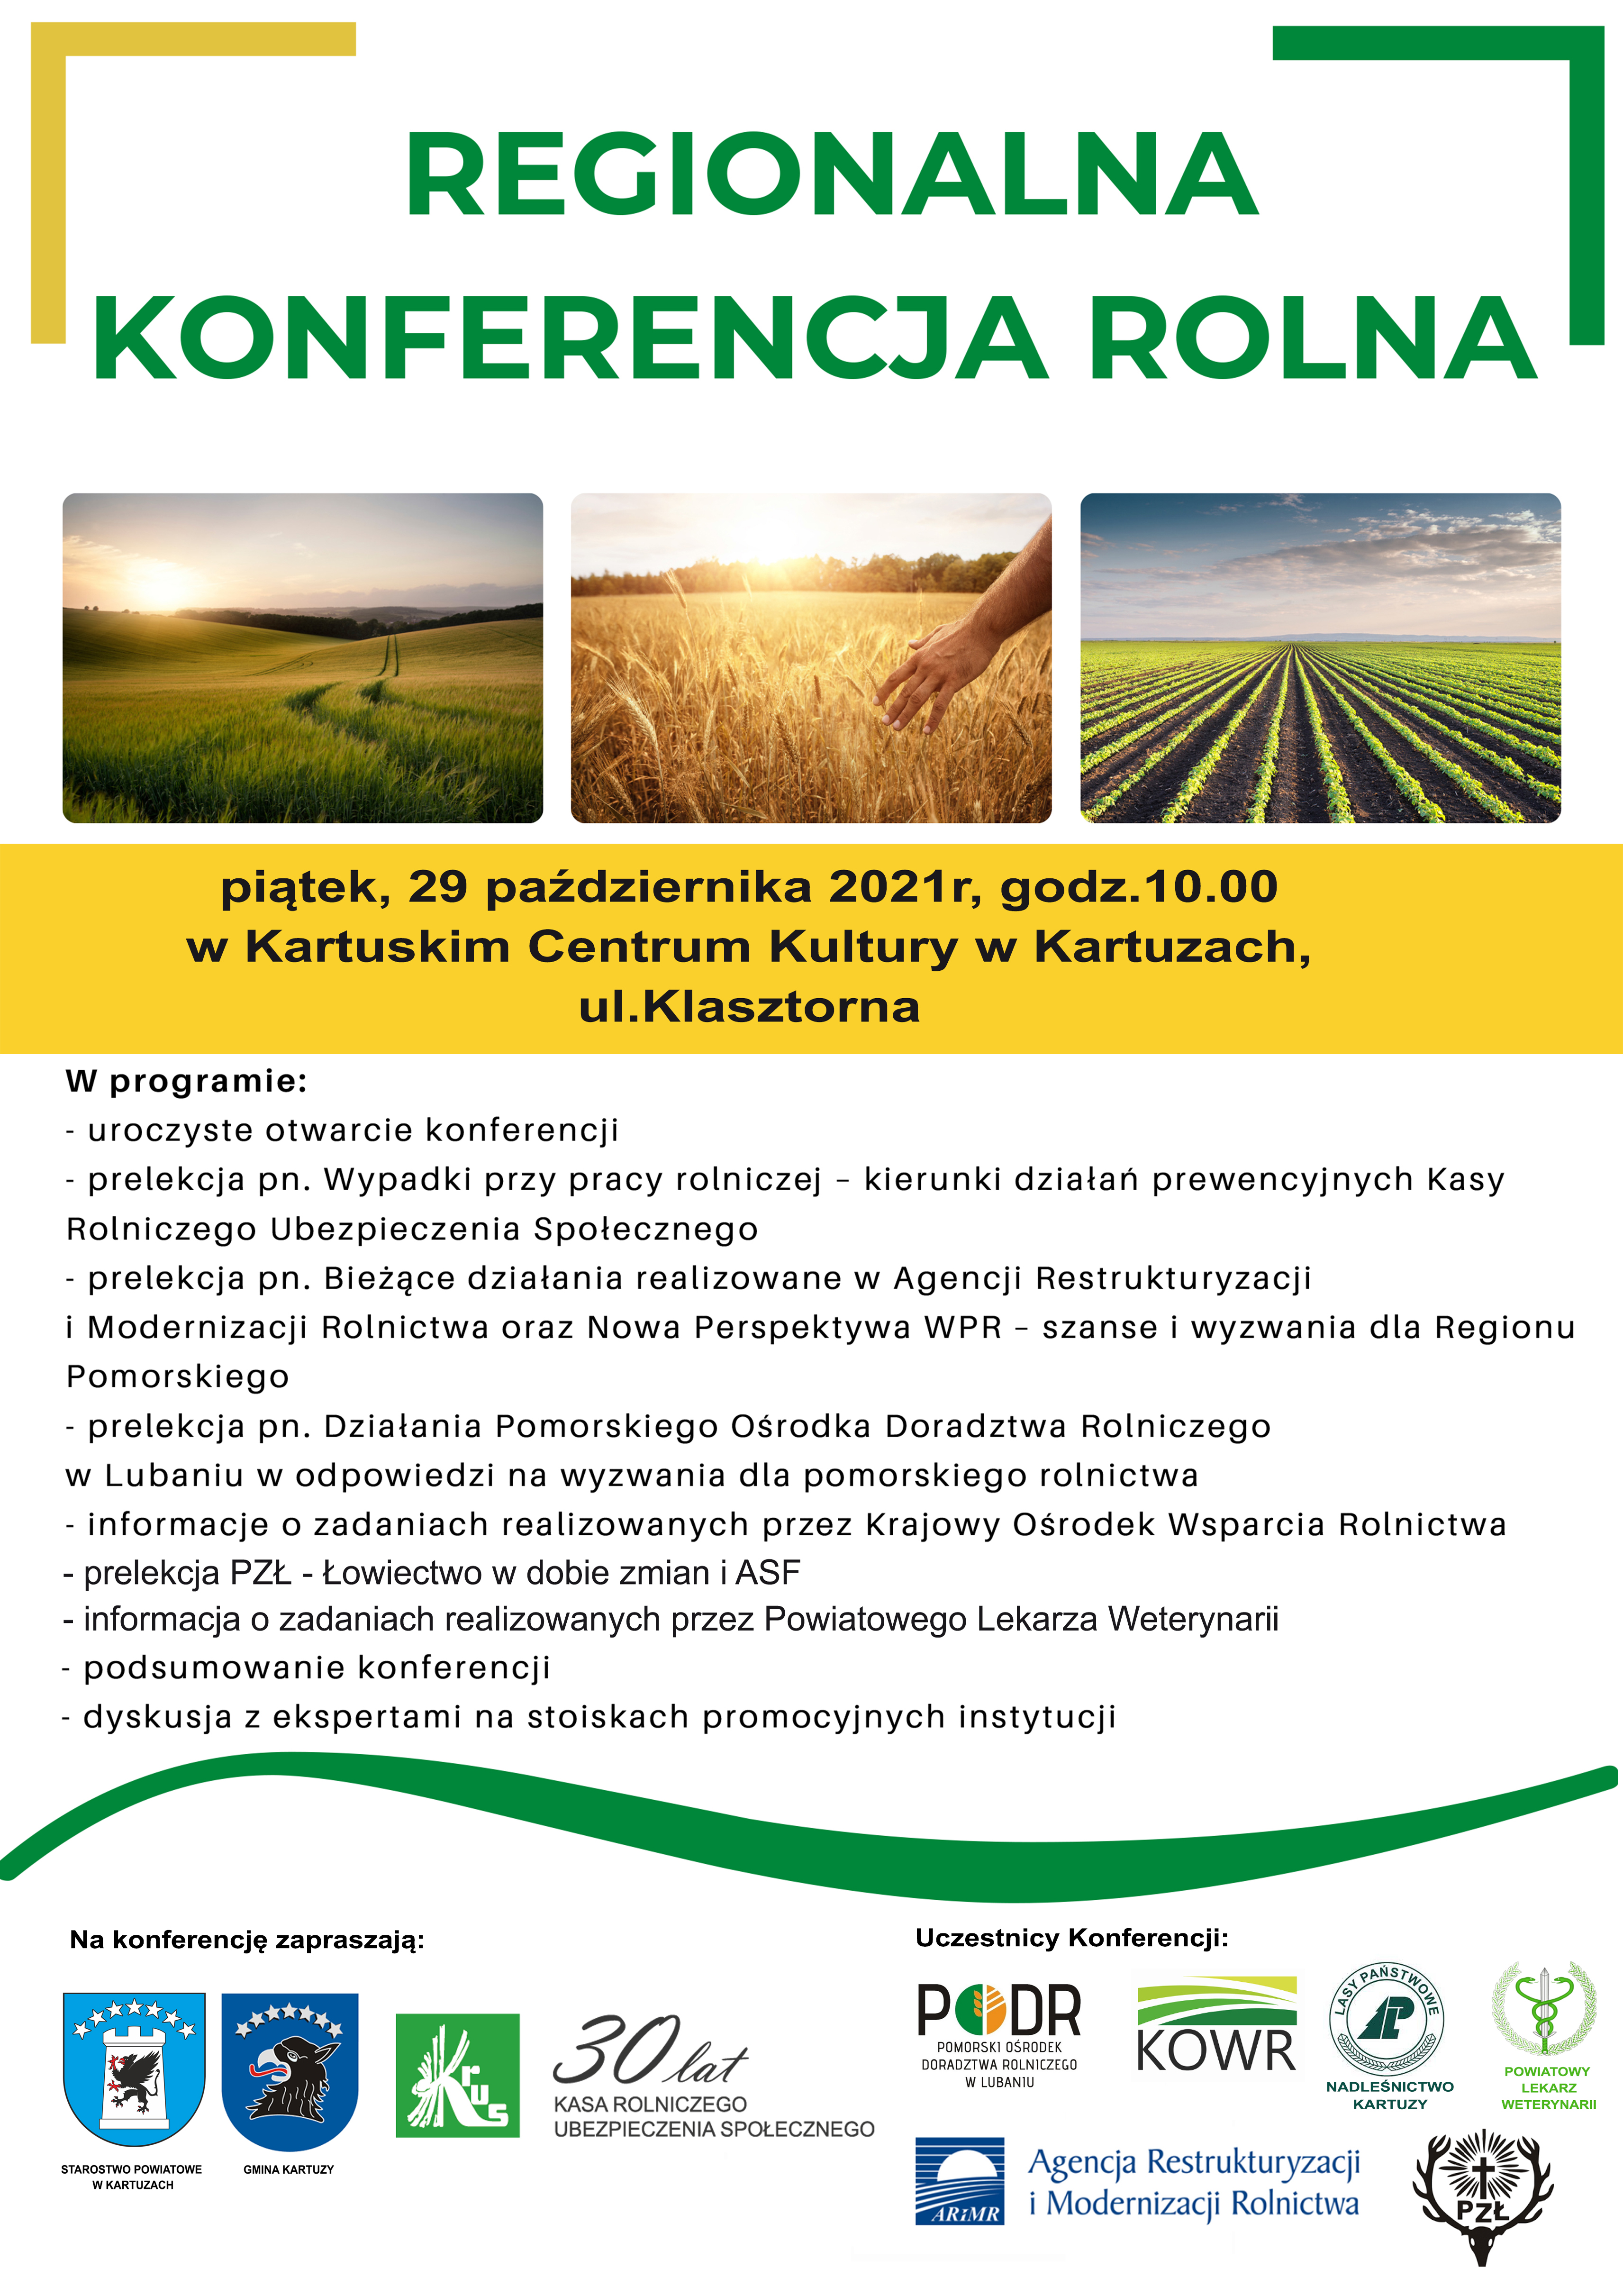 Plakat z zaproszeniem na Regionalną konferencję Rolną w Kartuzach